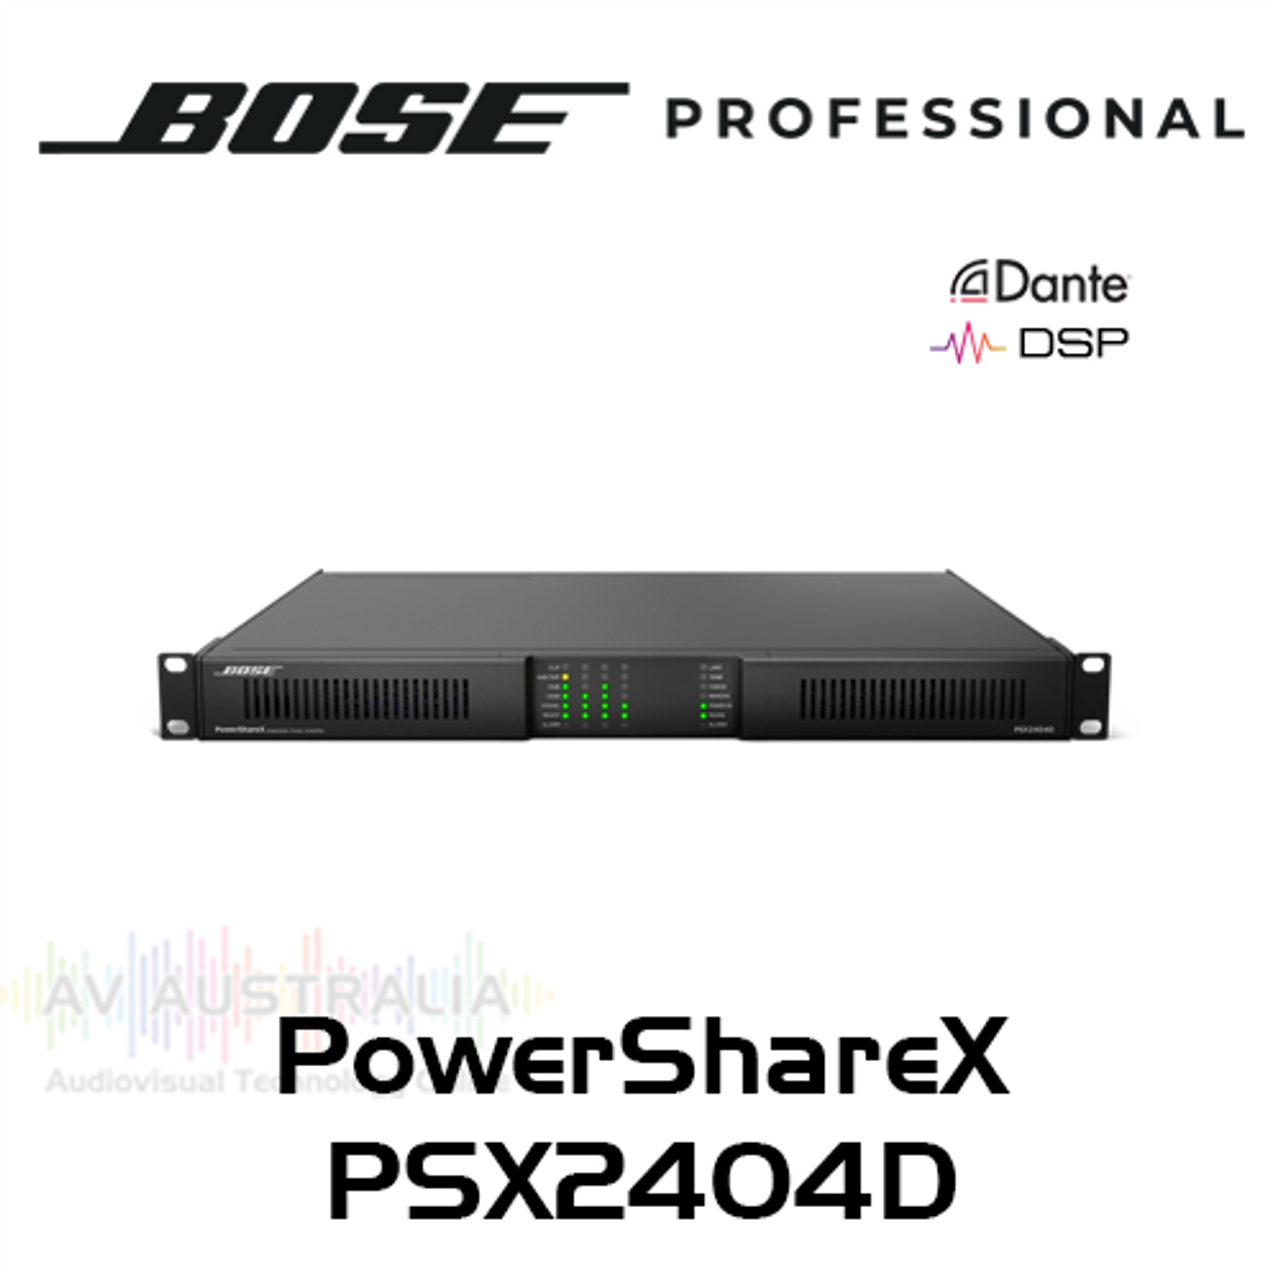 Bose Pro PowerShareX PSX2404D 4Ch 2400W Adaptable Power Amplifier